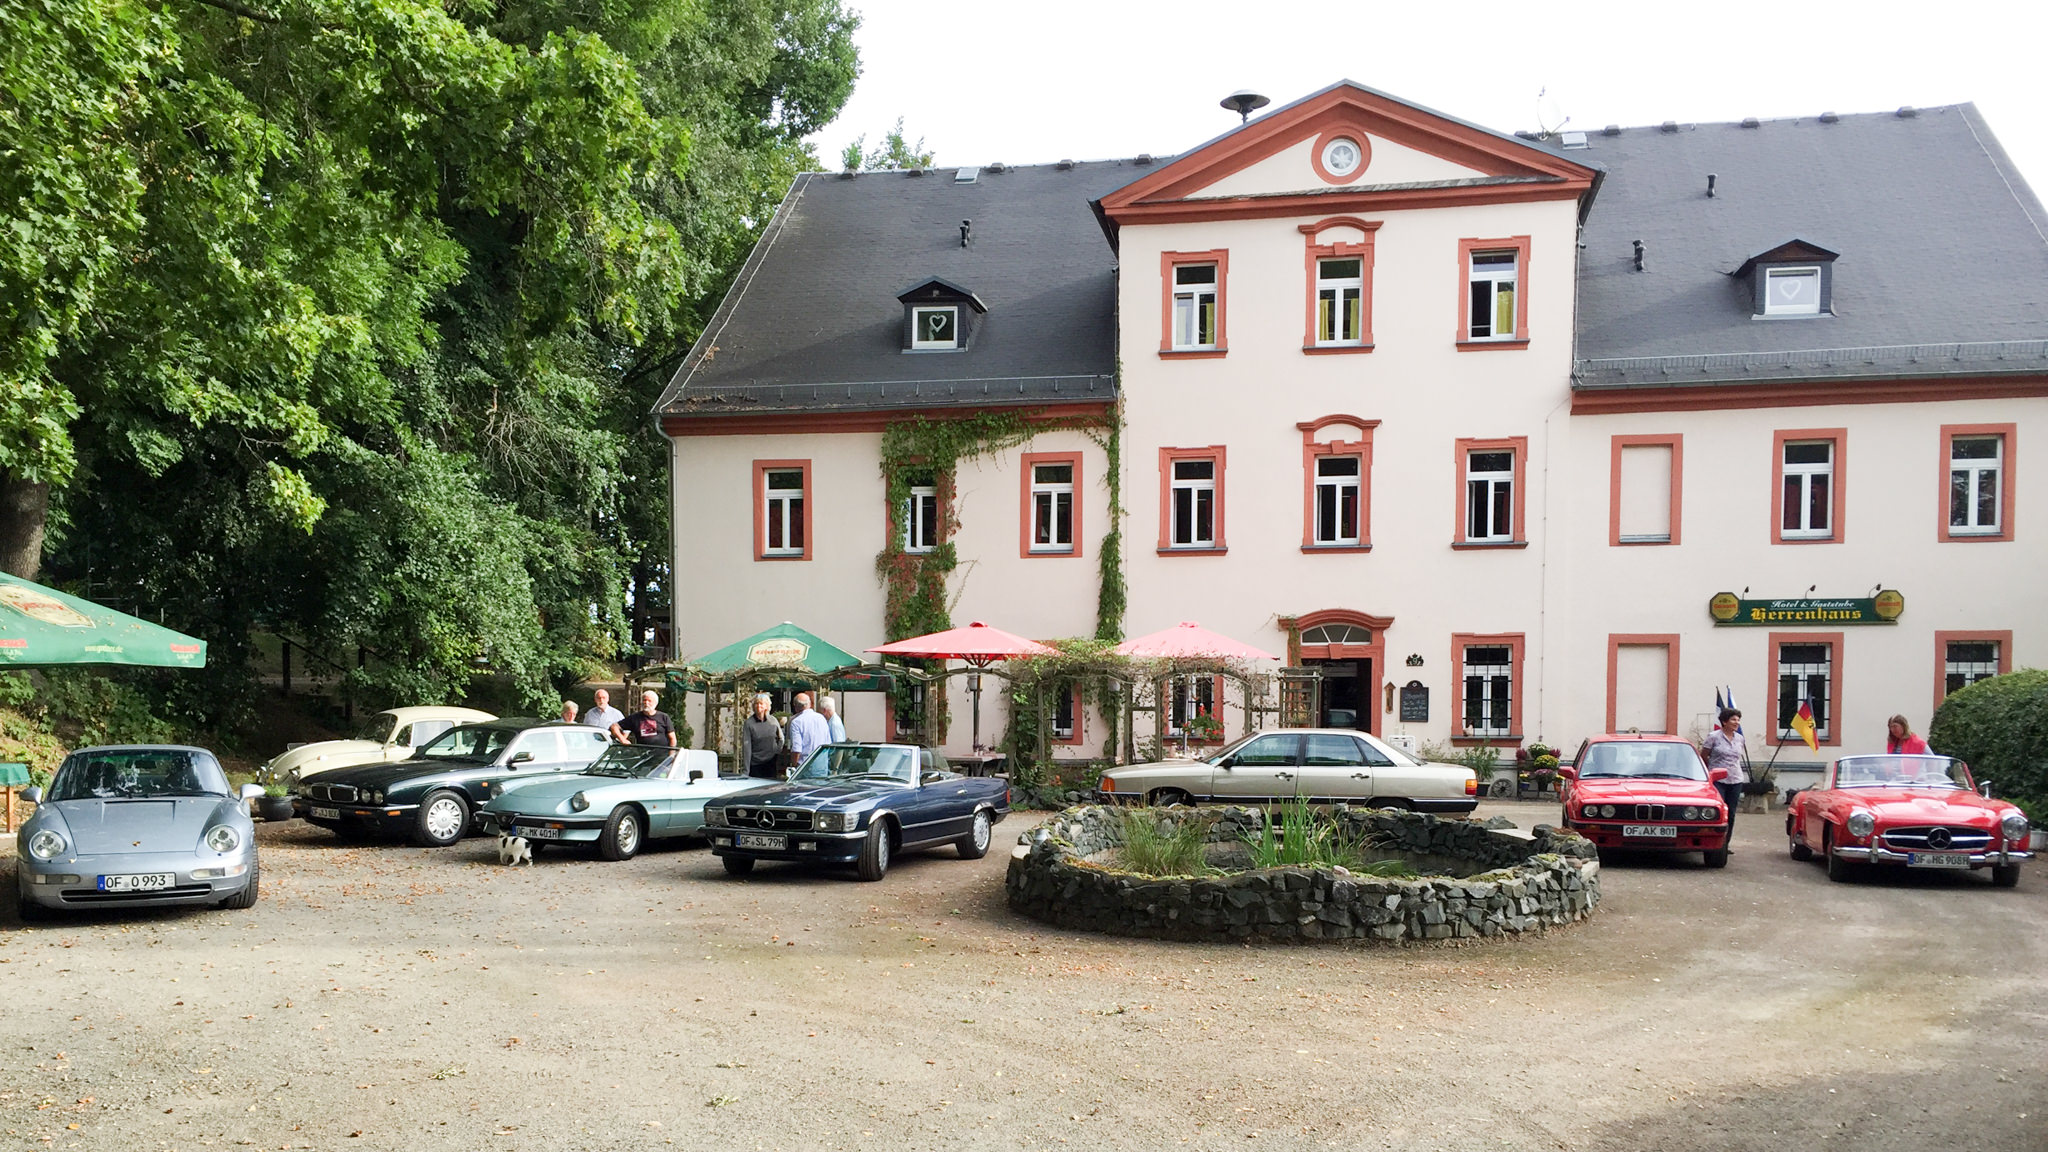 Herrenhaus Markersdorf mit Oldtimeraufstellung